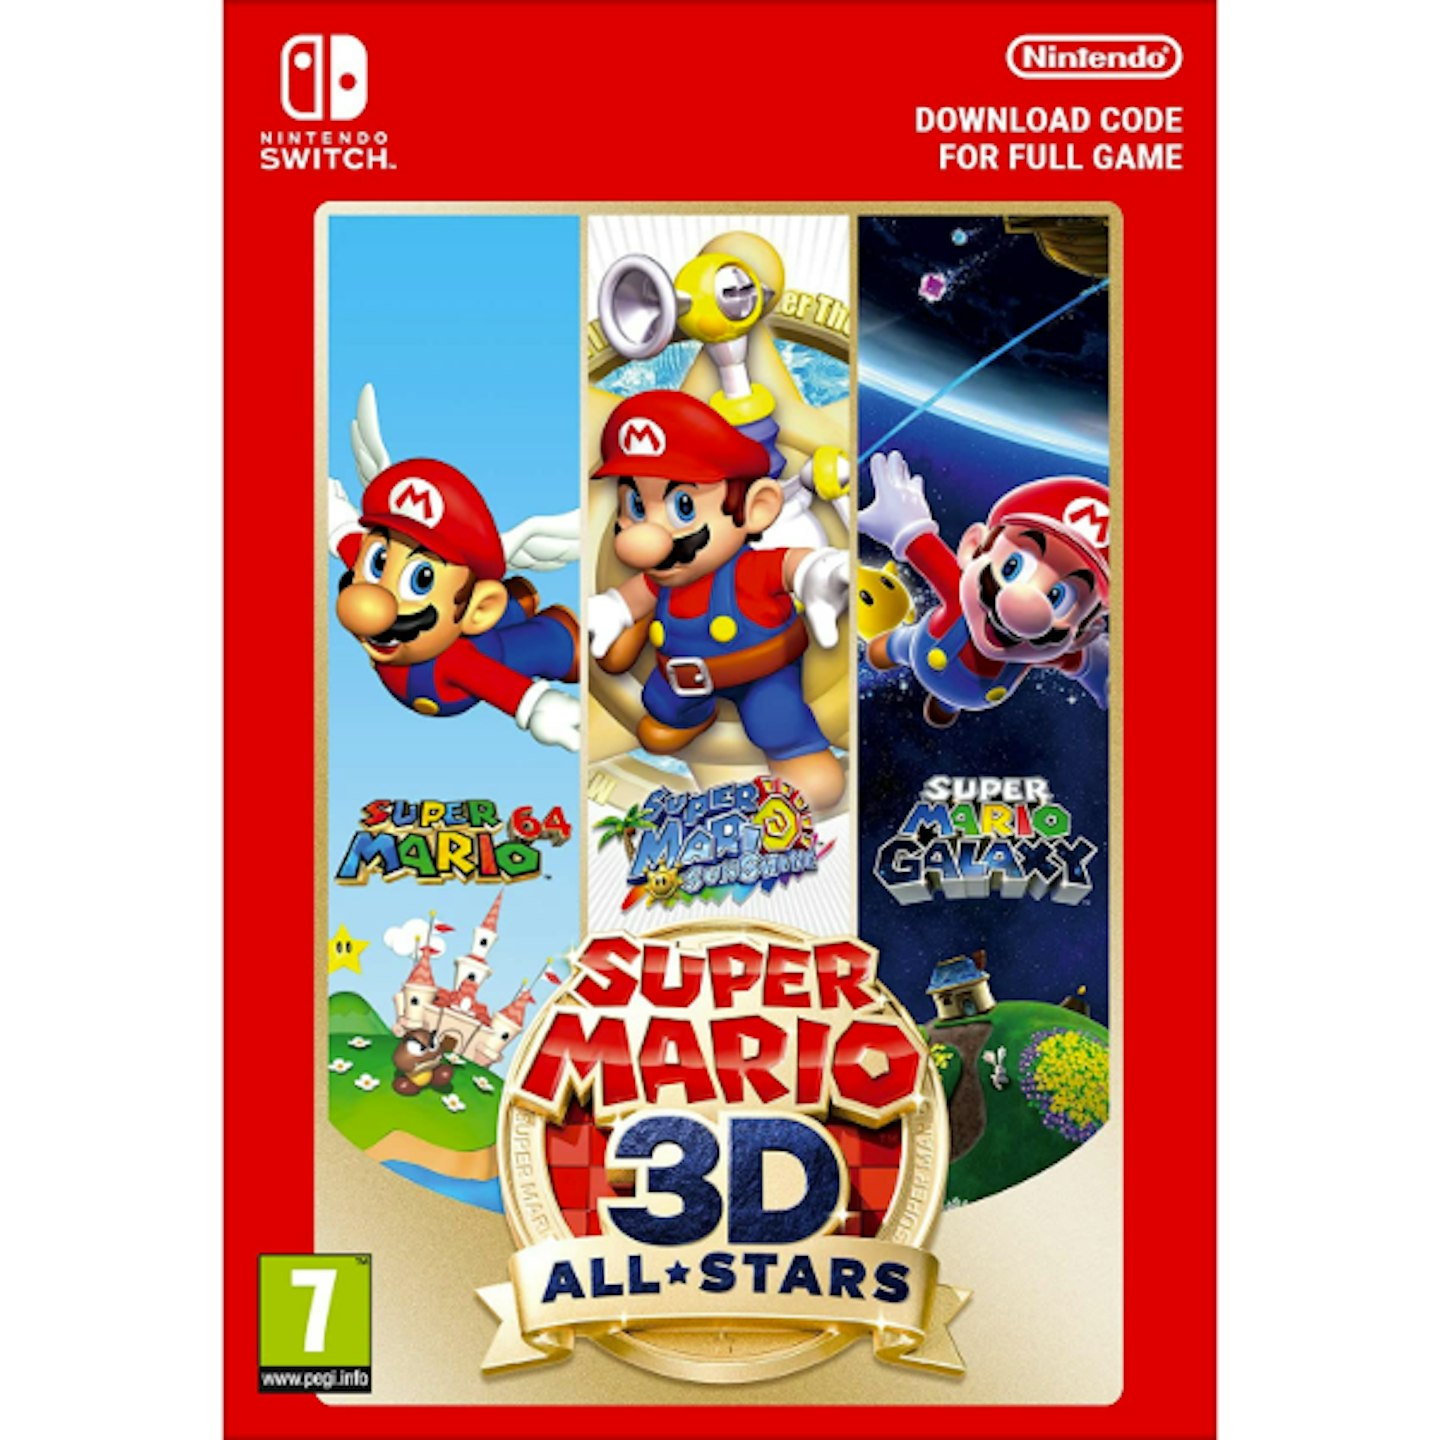 Super Mario 3D All-Stars - Download Code